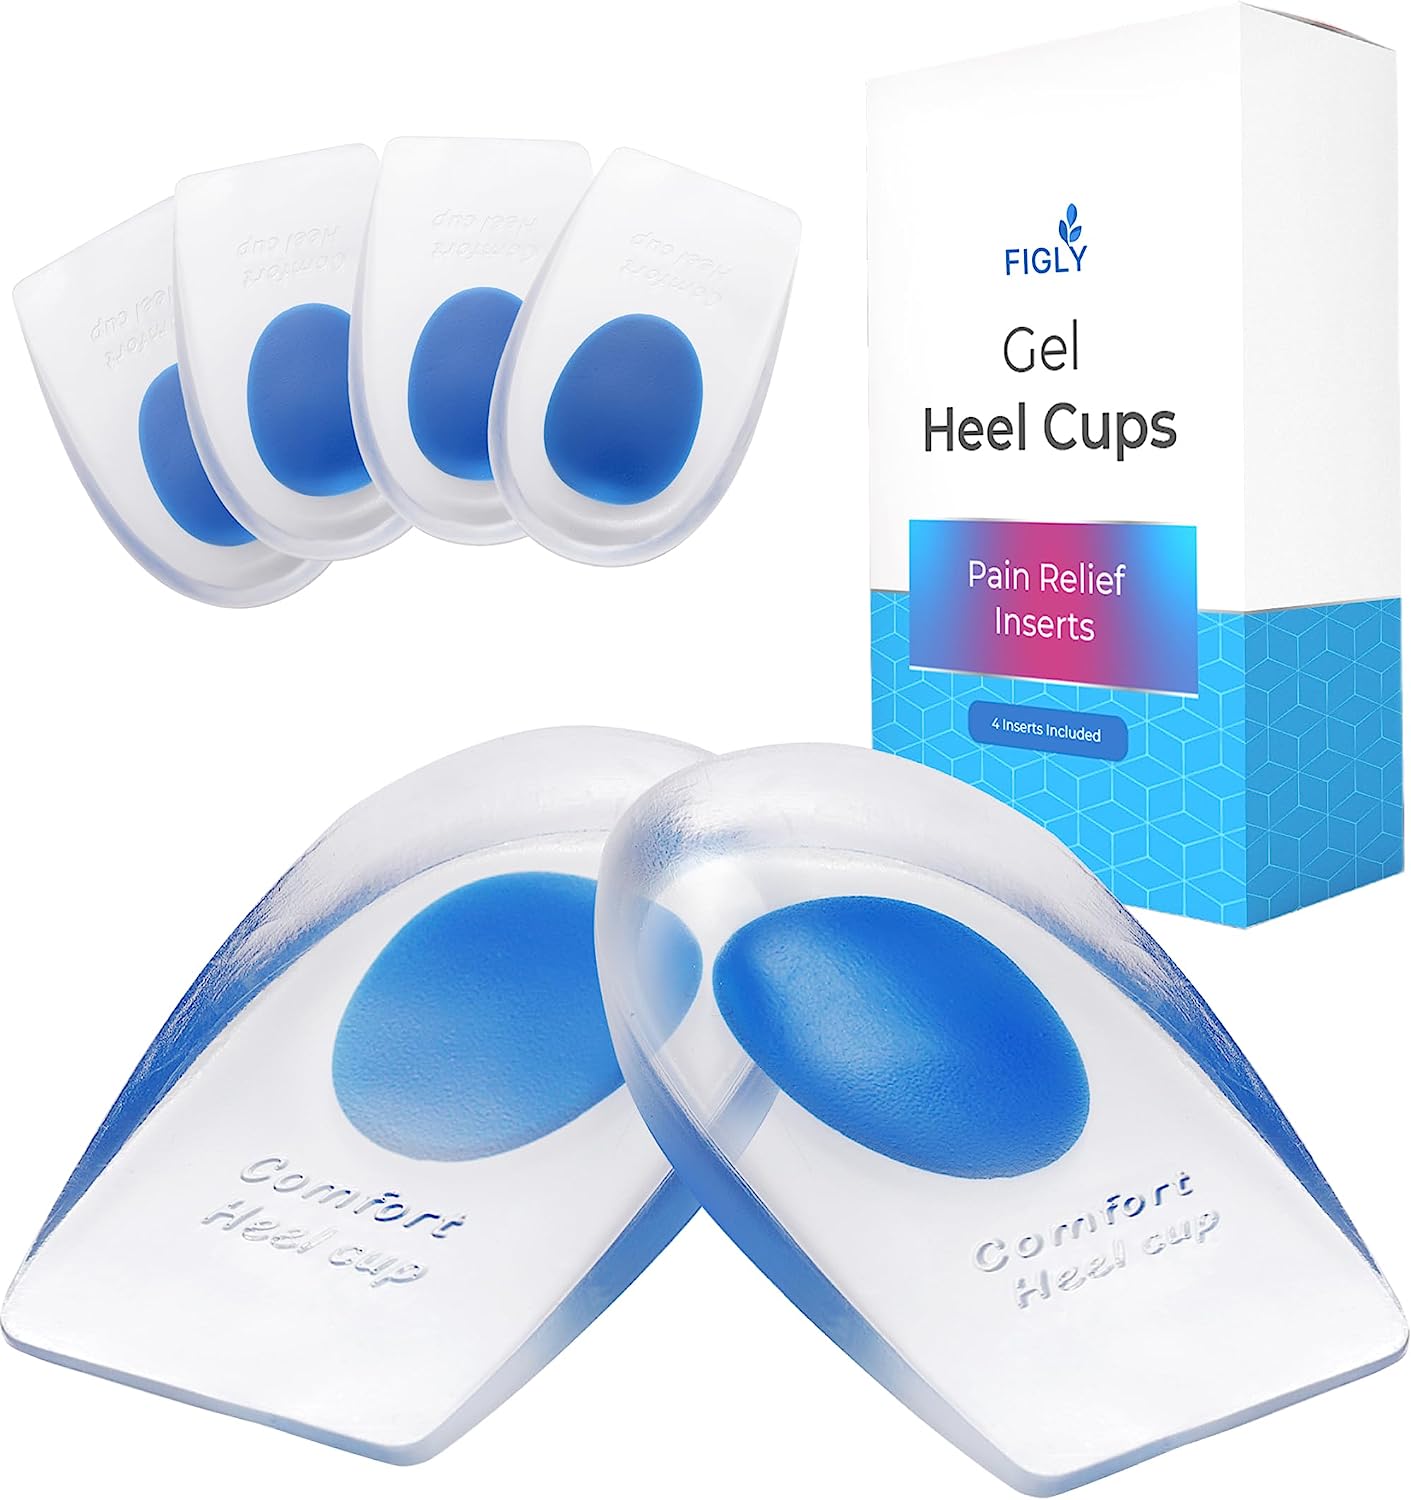 Figly Gel Heel Cups for Heel Pain Relief (4 Pack) - [...]